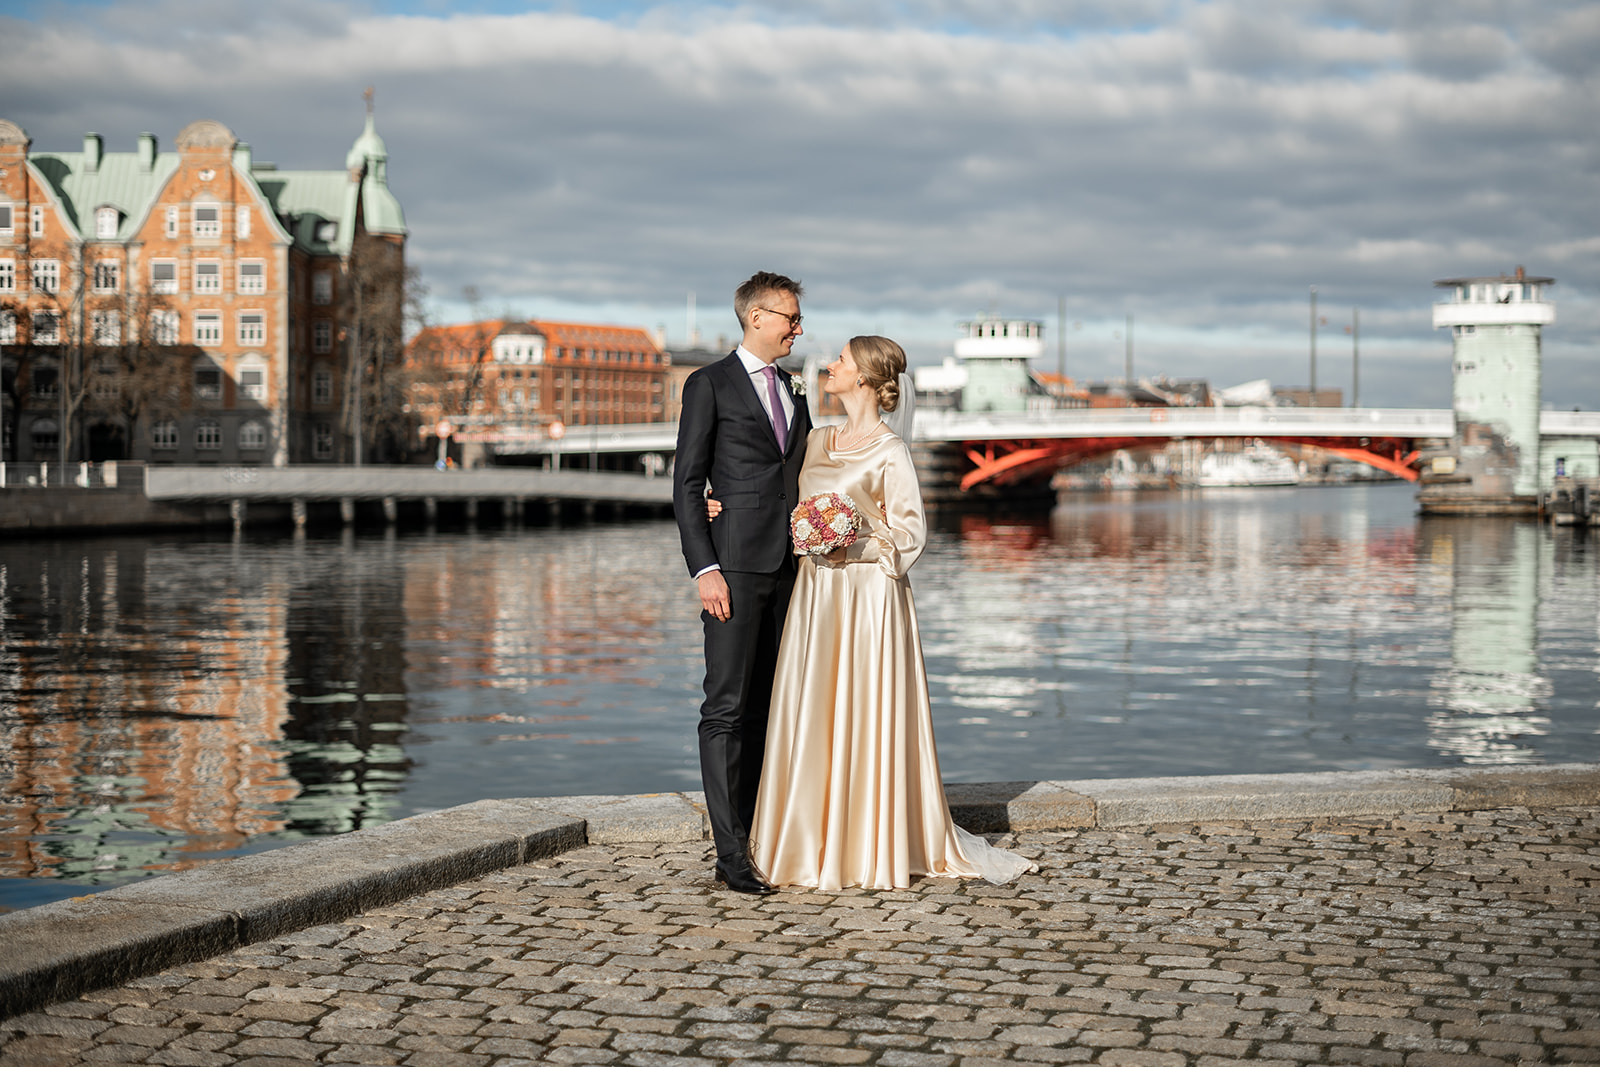 Bryllupsbilleder på Christianshavn, København ved kanalen